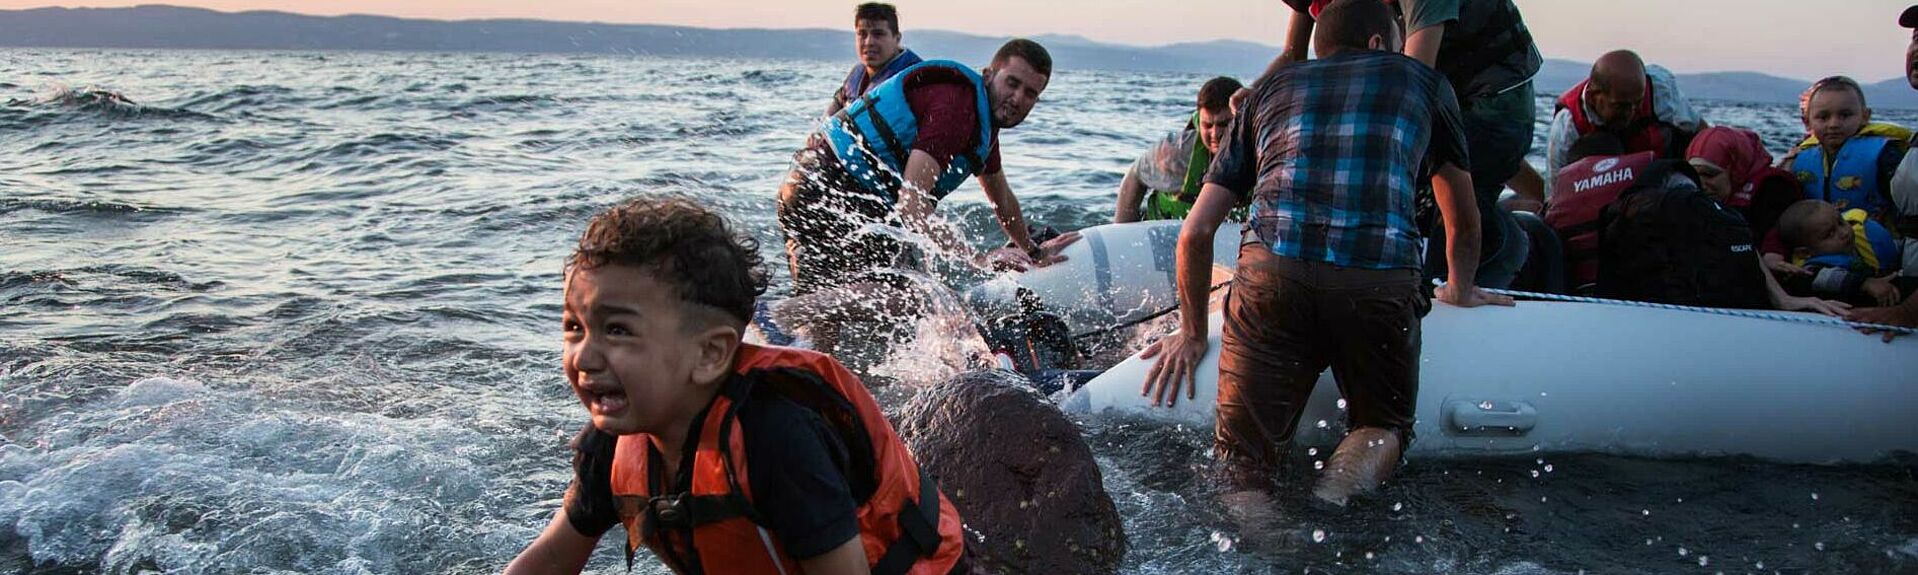 Seenotrettung Flüchtlingskrise Mittelmeer